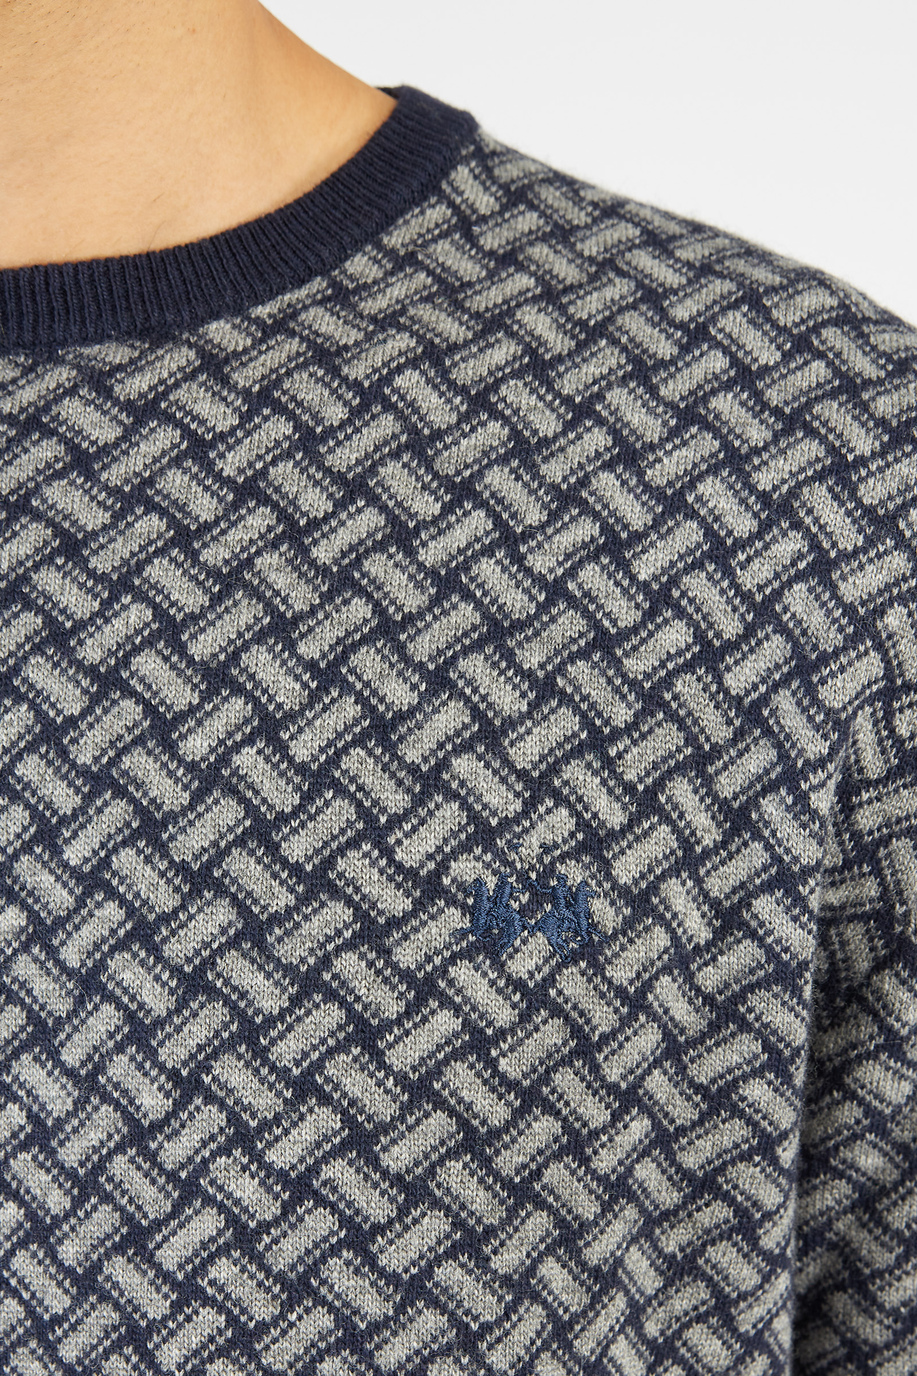 Maglia uomo Argentina maniche lunghe girocollo misto lana merino cashmere regular fit - Capsule | La Martina - Official Online Shop